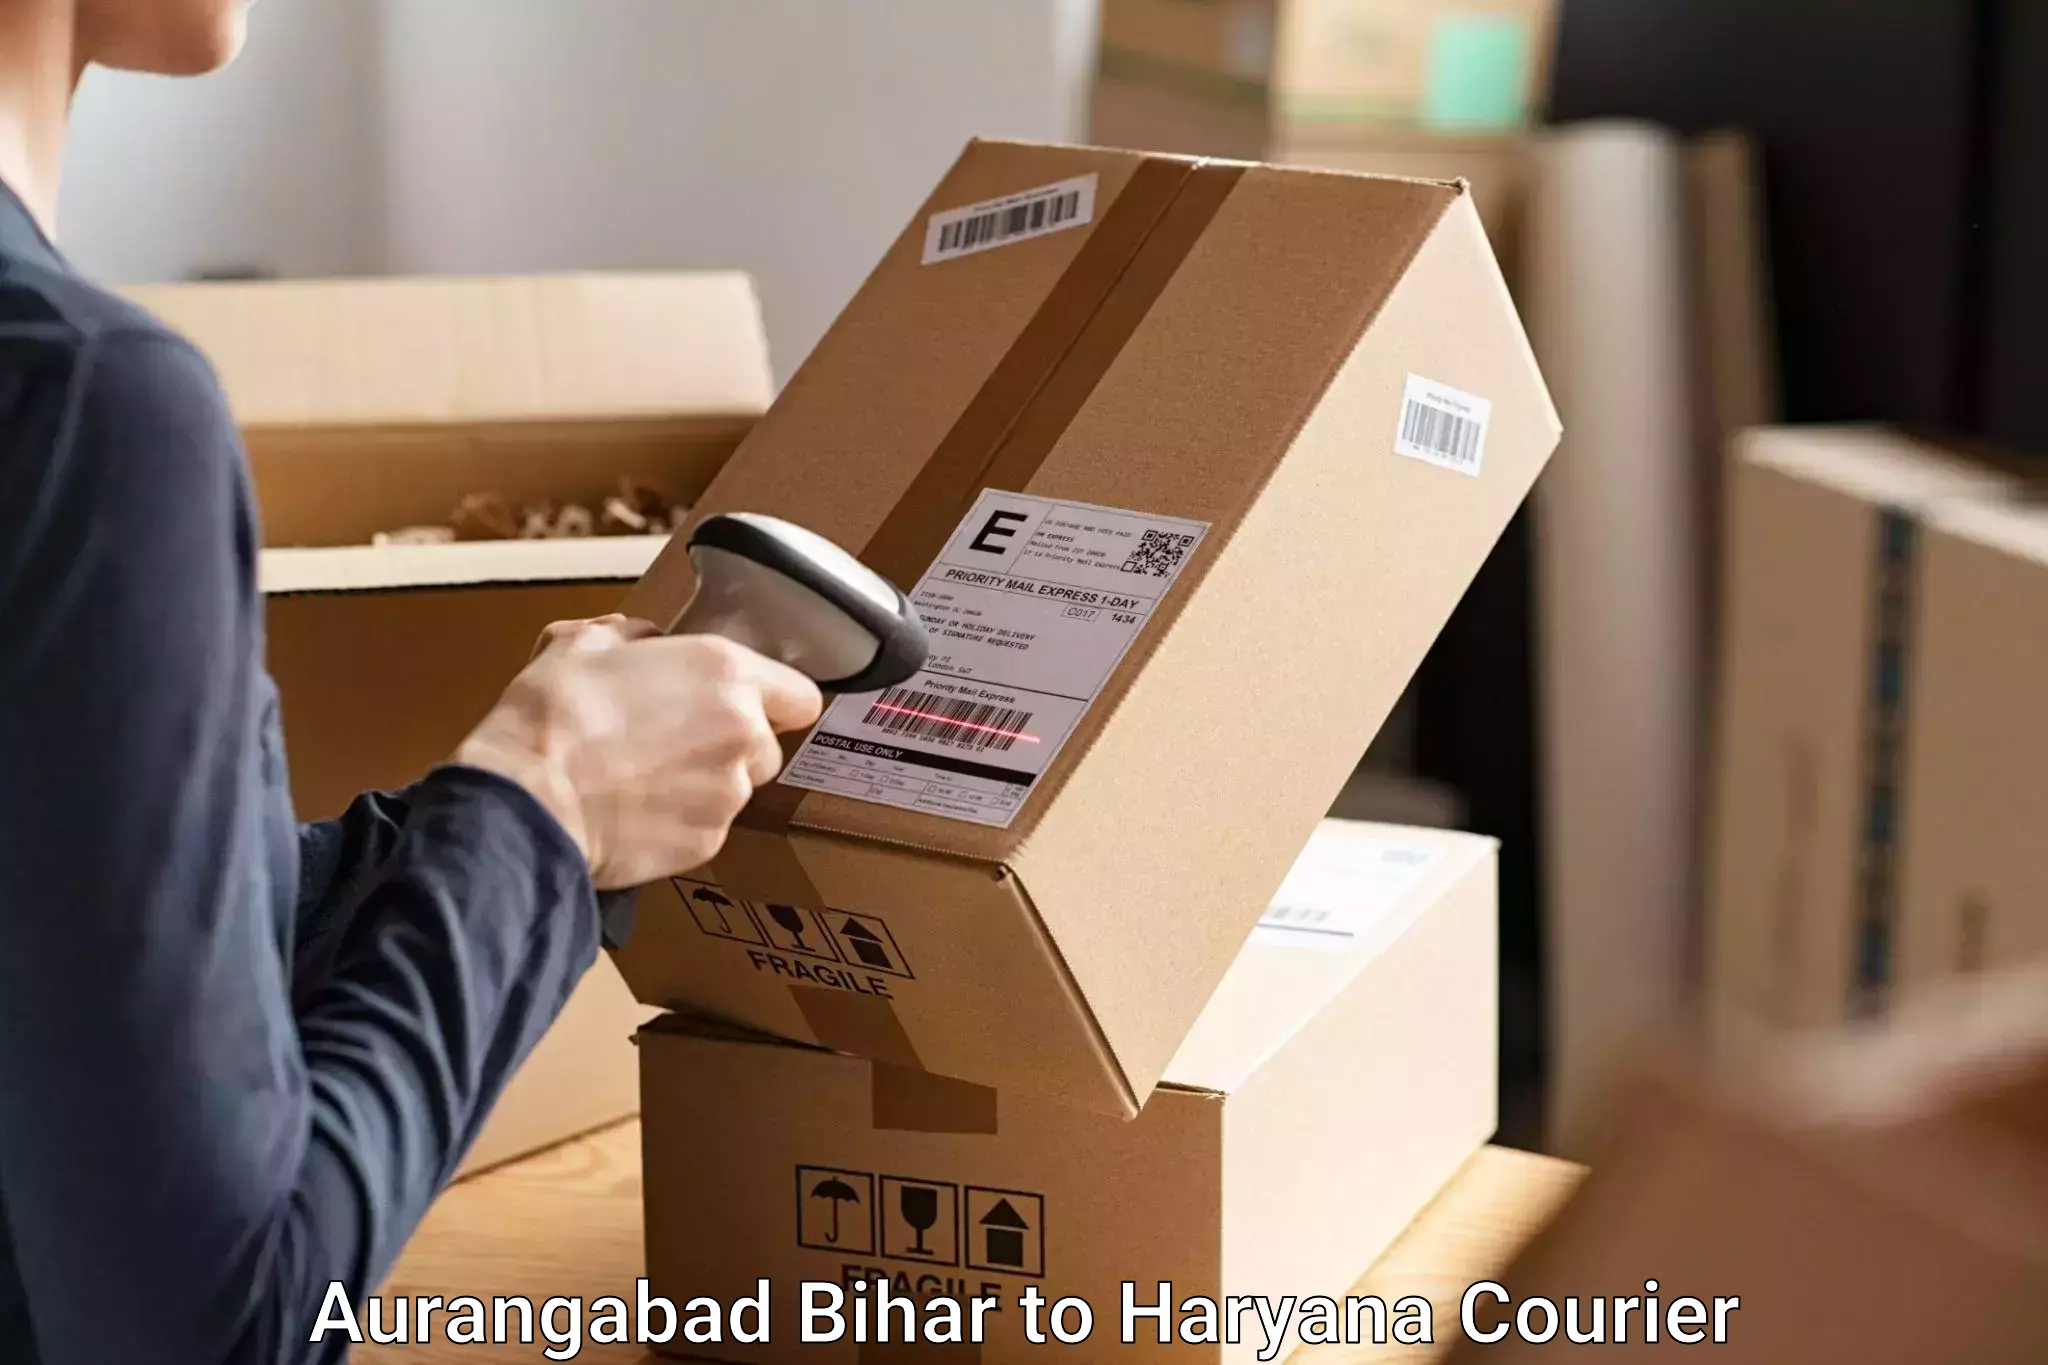 Baggage courier rates Aurangabad Bihar to IIIT Sonepat